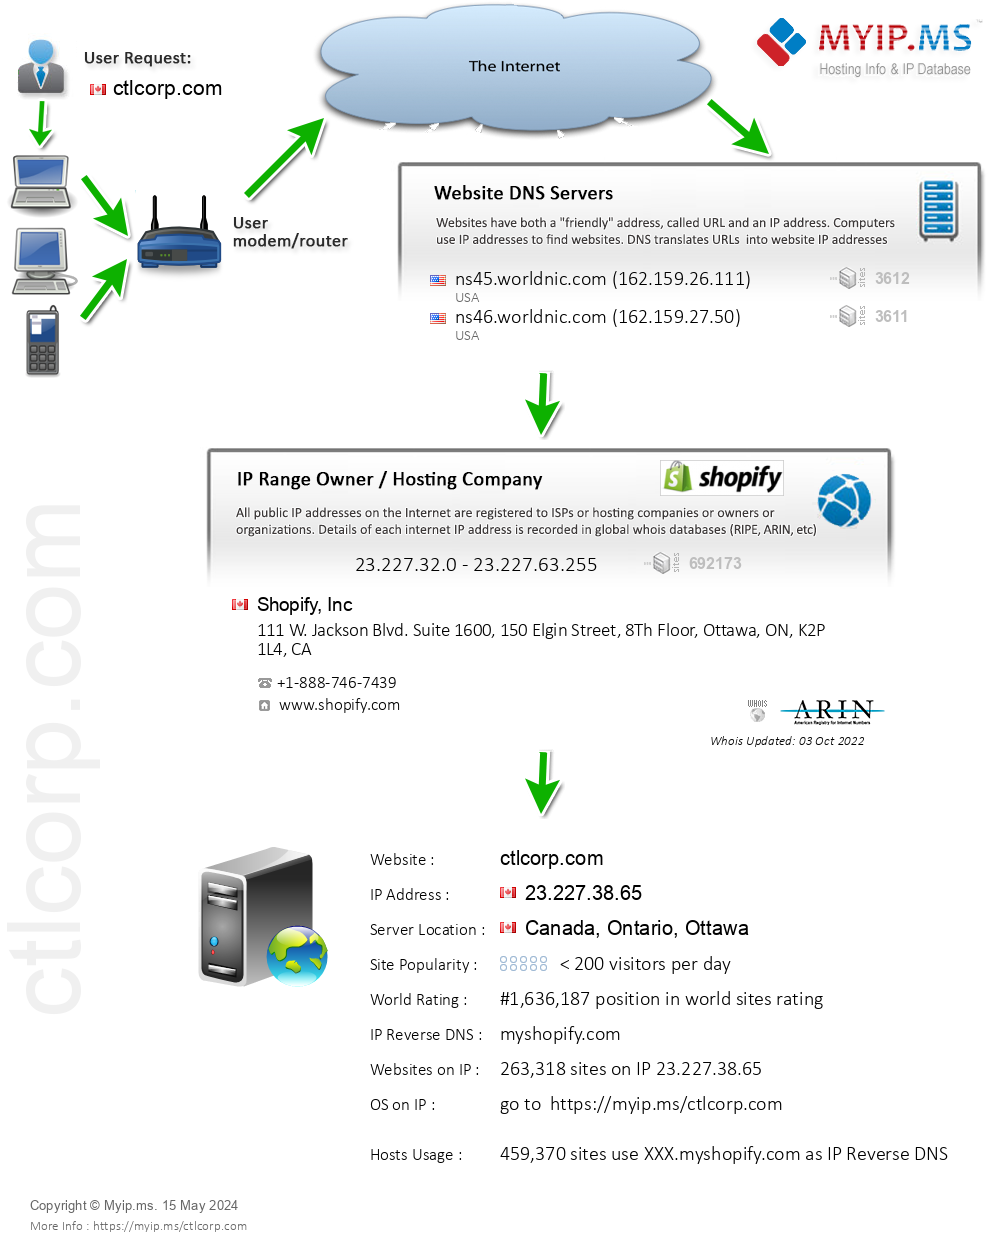 Ctlcorp.com - Website Hosting Visual IP Diagram